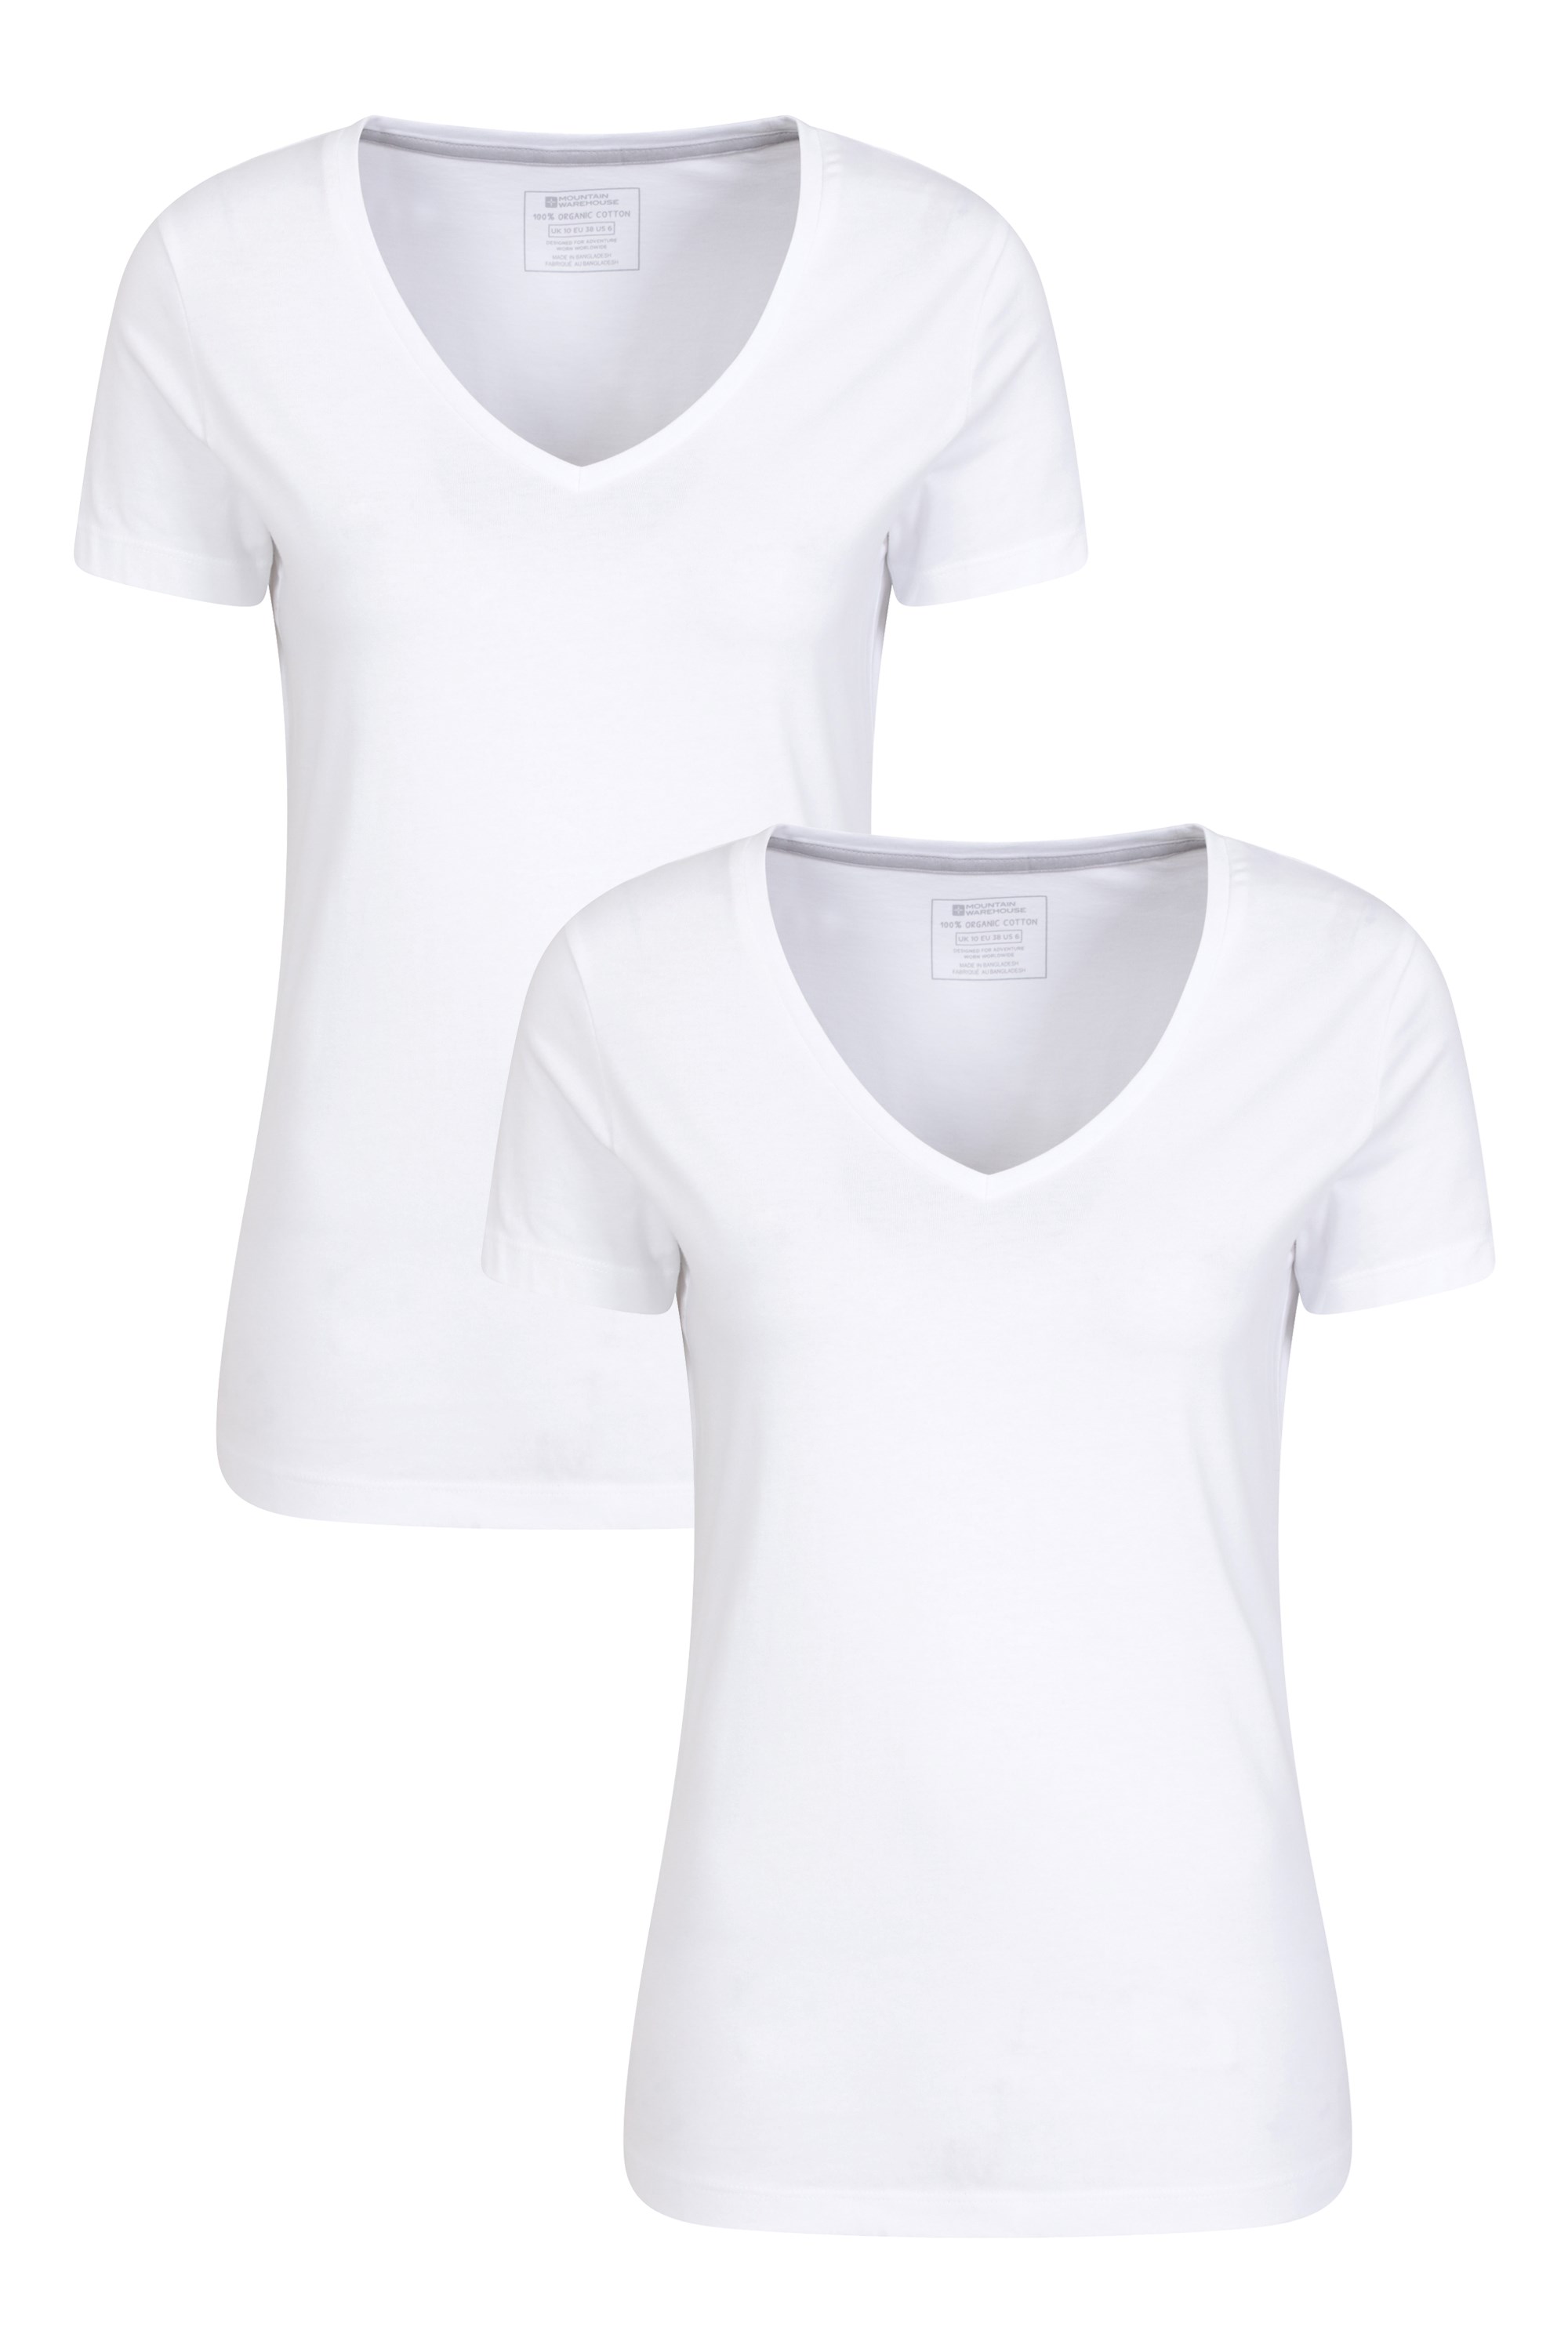 Eden Womens Organic Short Sleeve T-Shirt 2-Pack - White